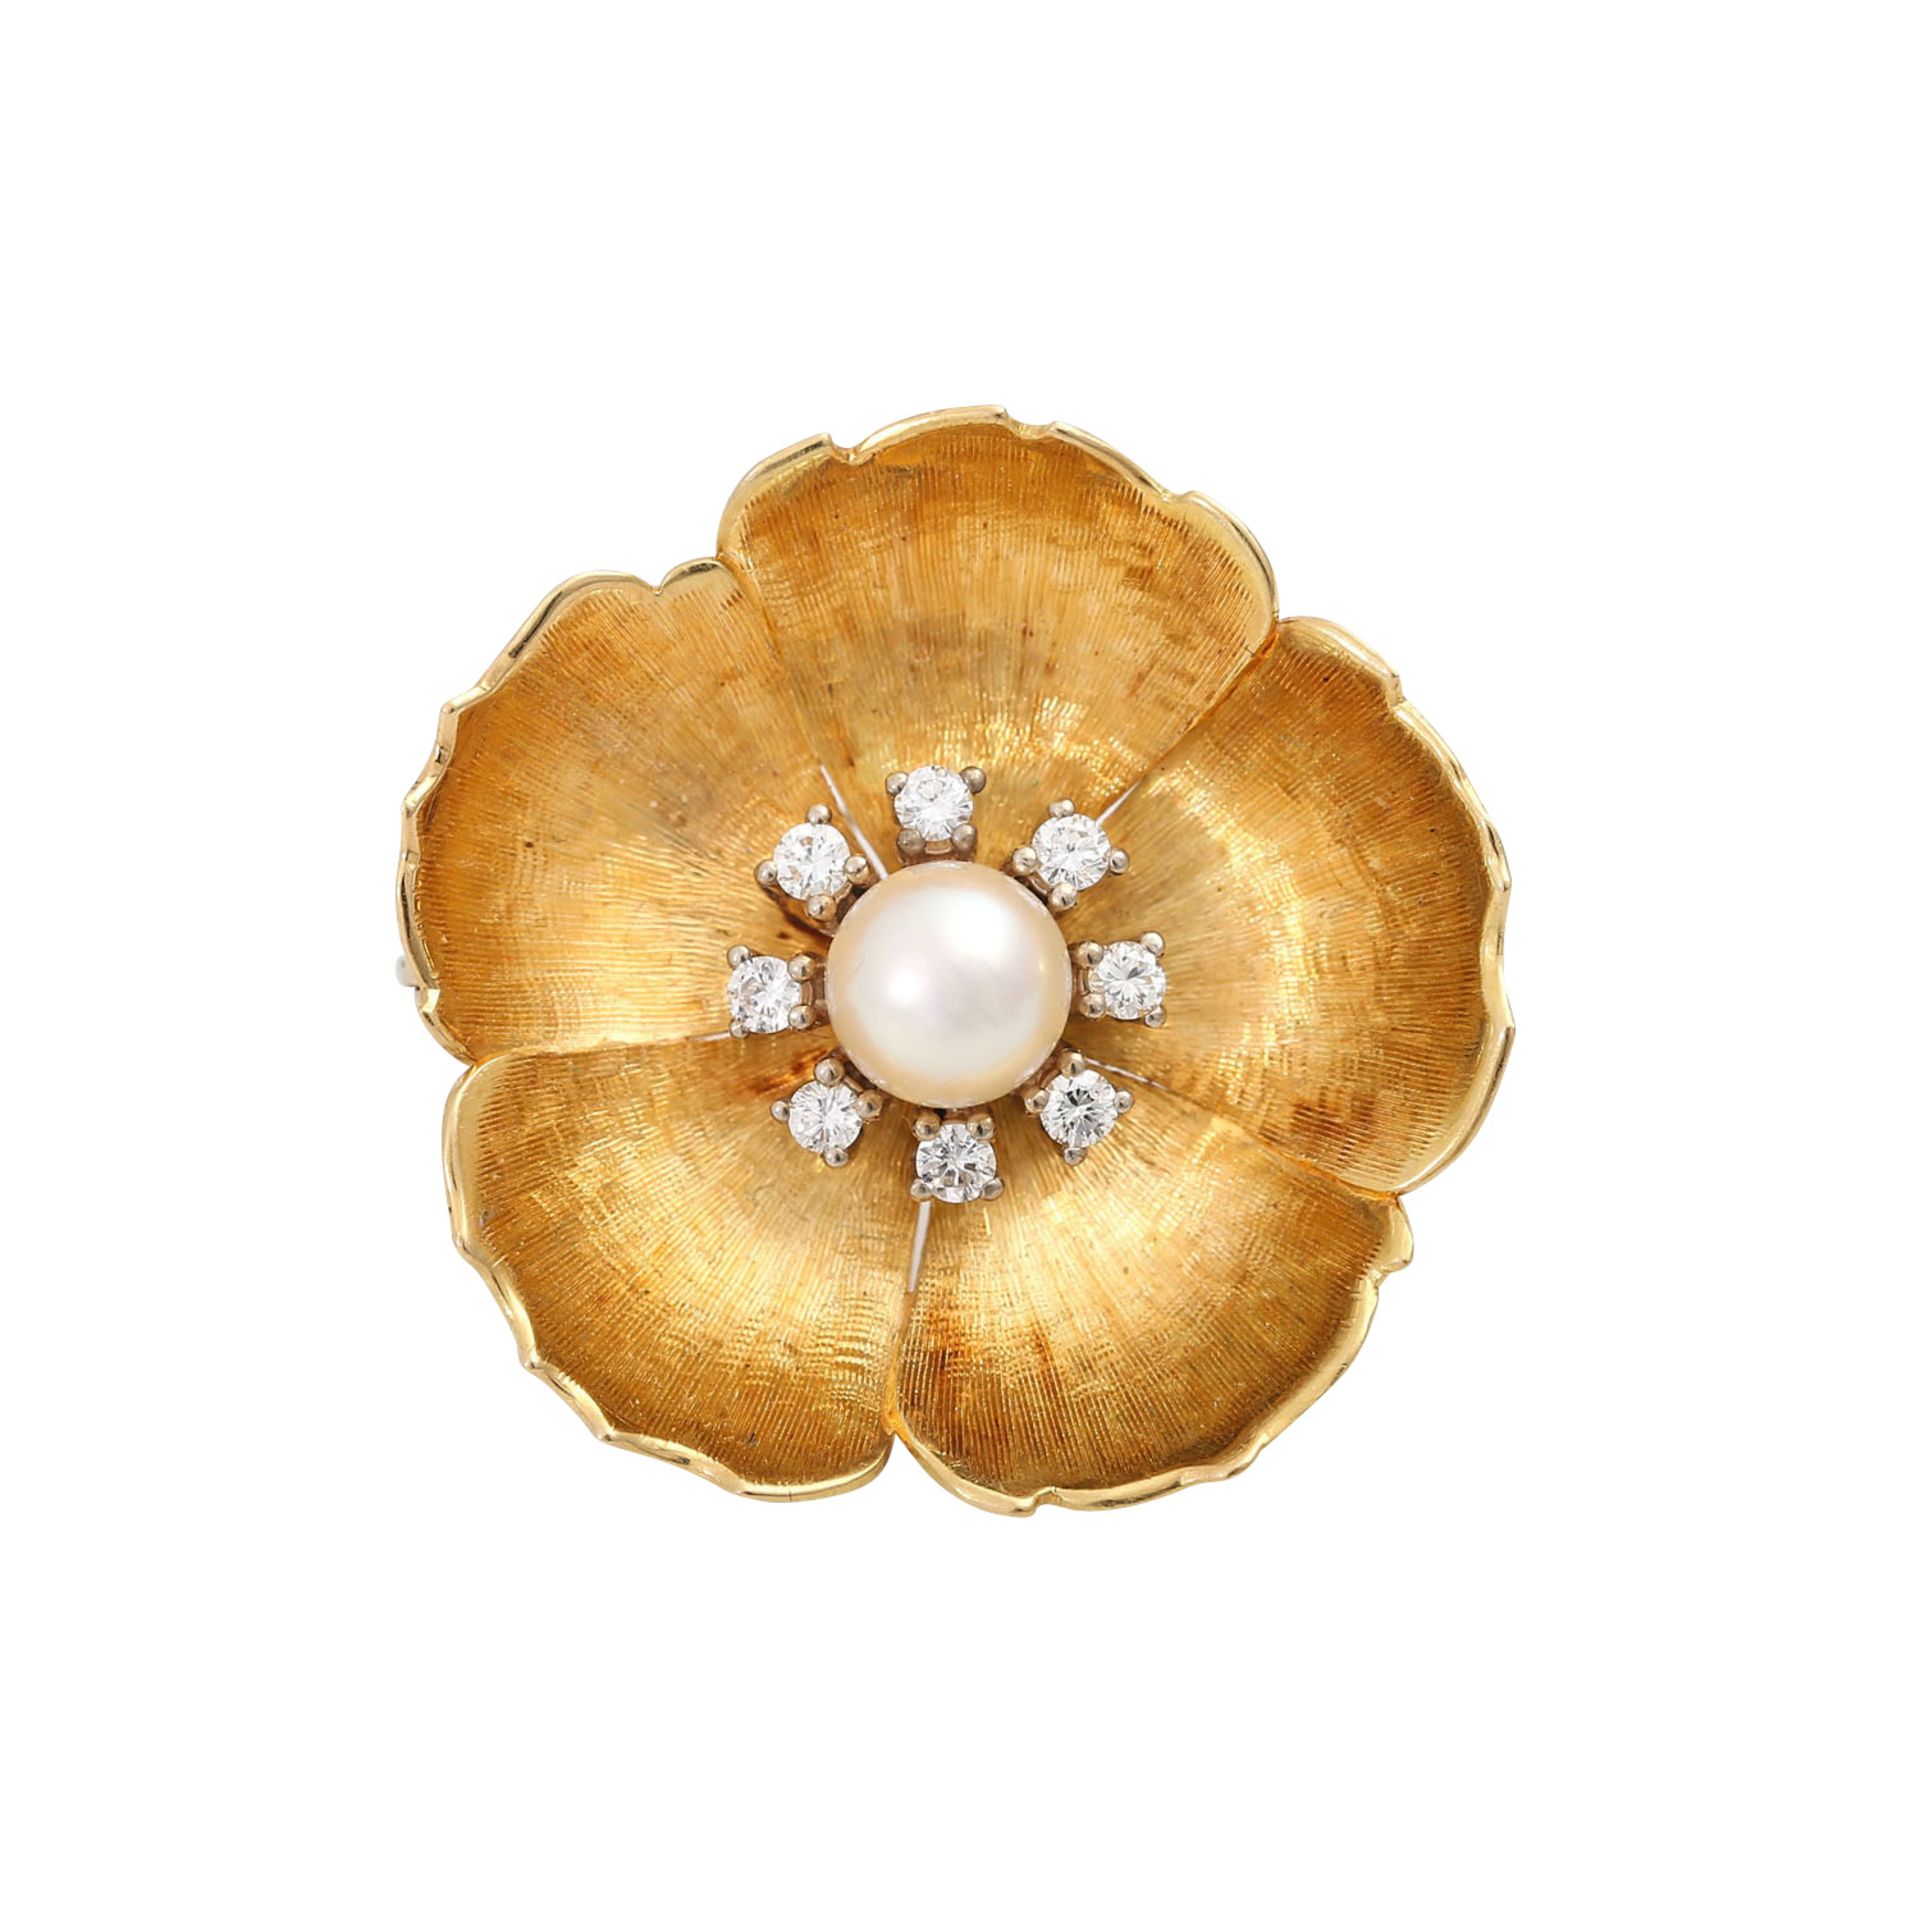 Blütenbrosche mit Perle und Brillantenvon zus. ca. 0,24 ct von guter Farbe u. Reinheit, Zuchtperle